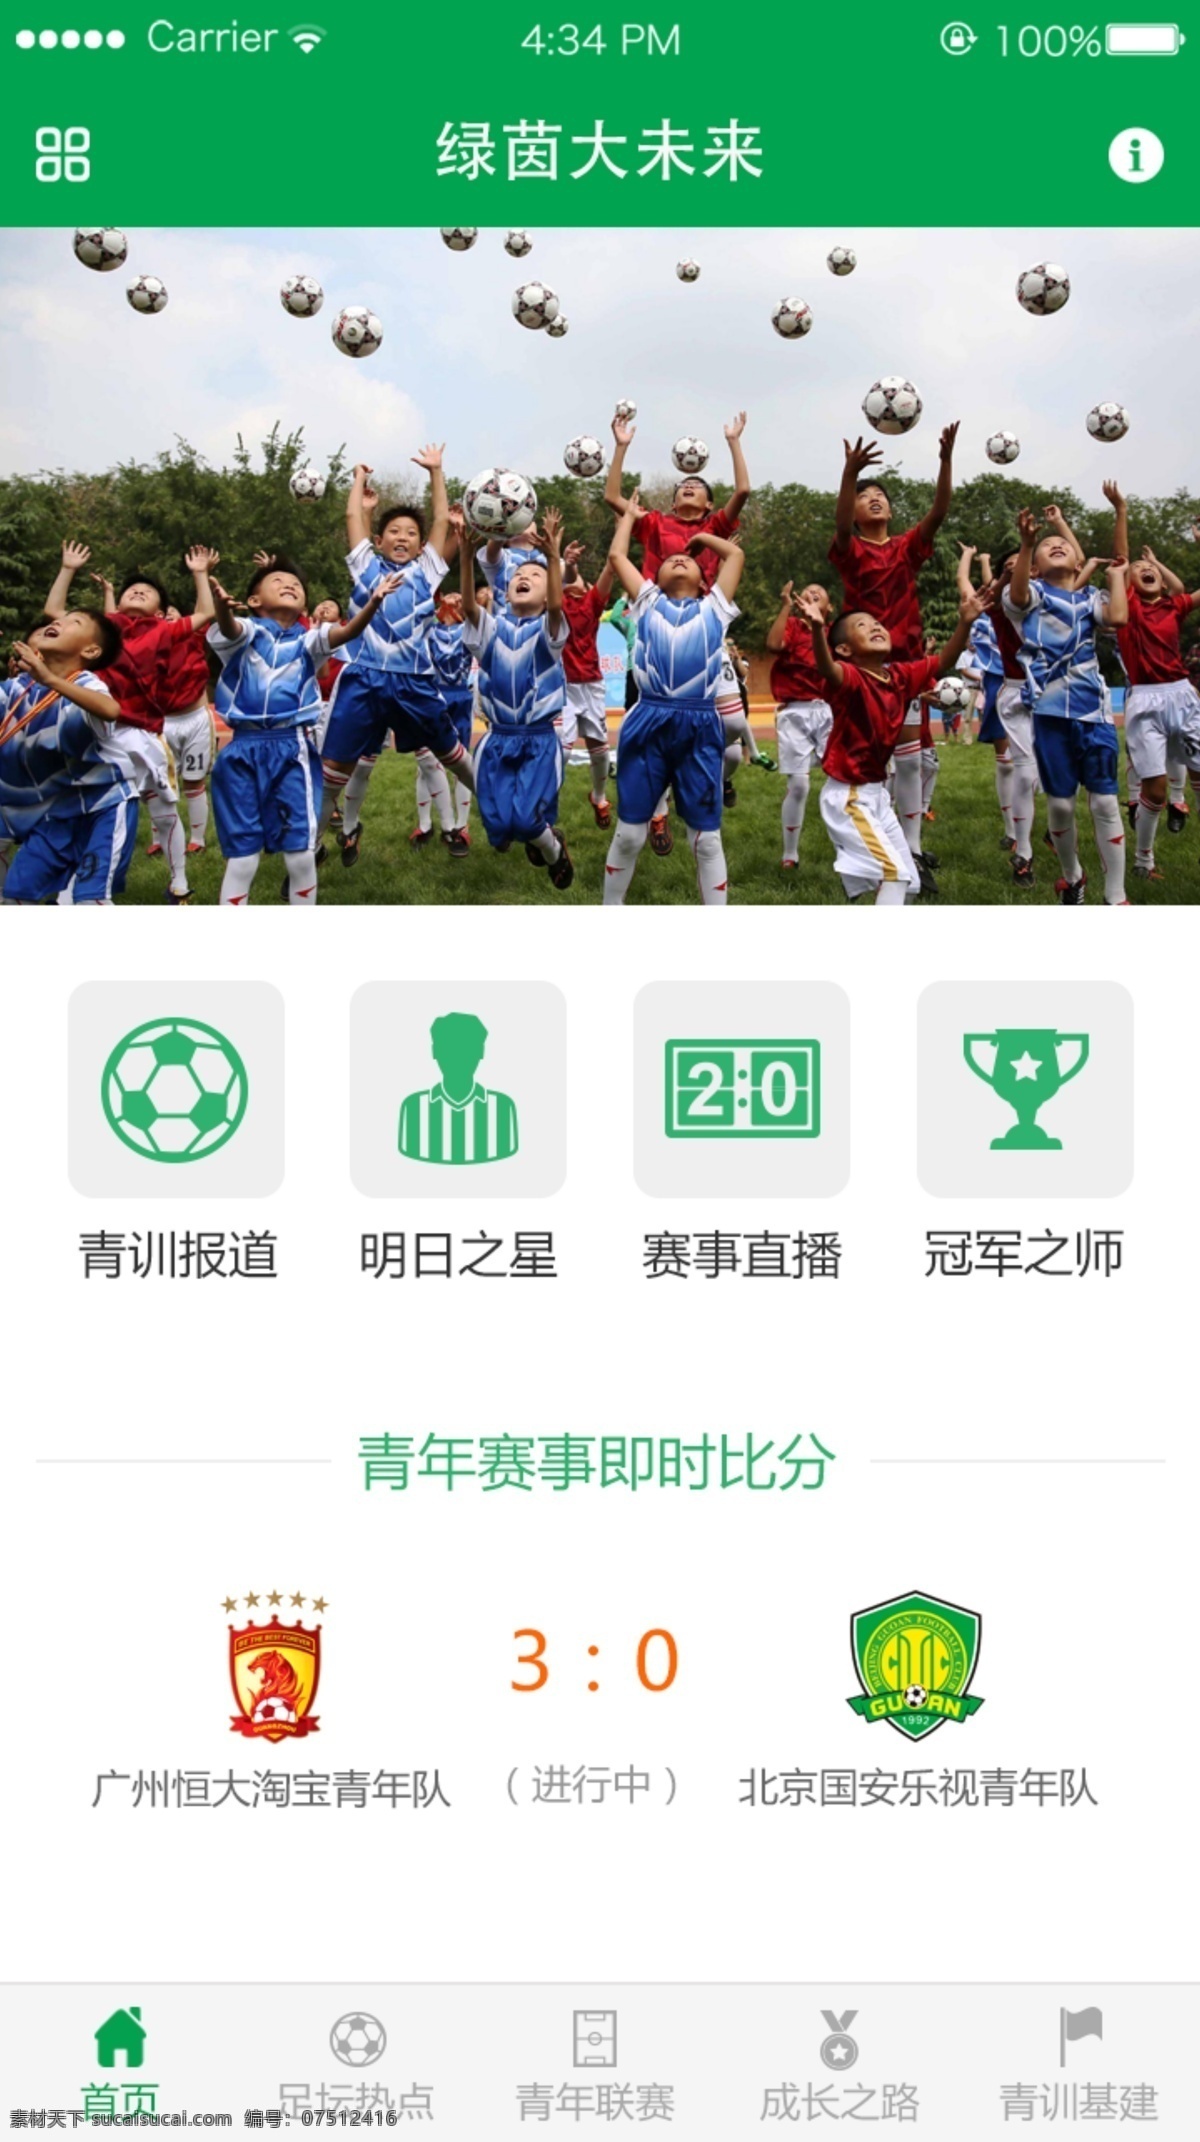 绿色 风格 足球 app 界面设计 绿色风格 绿茵大未来